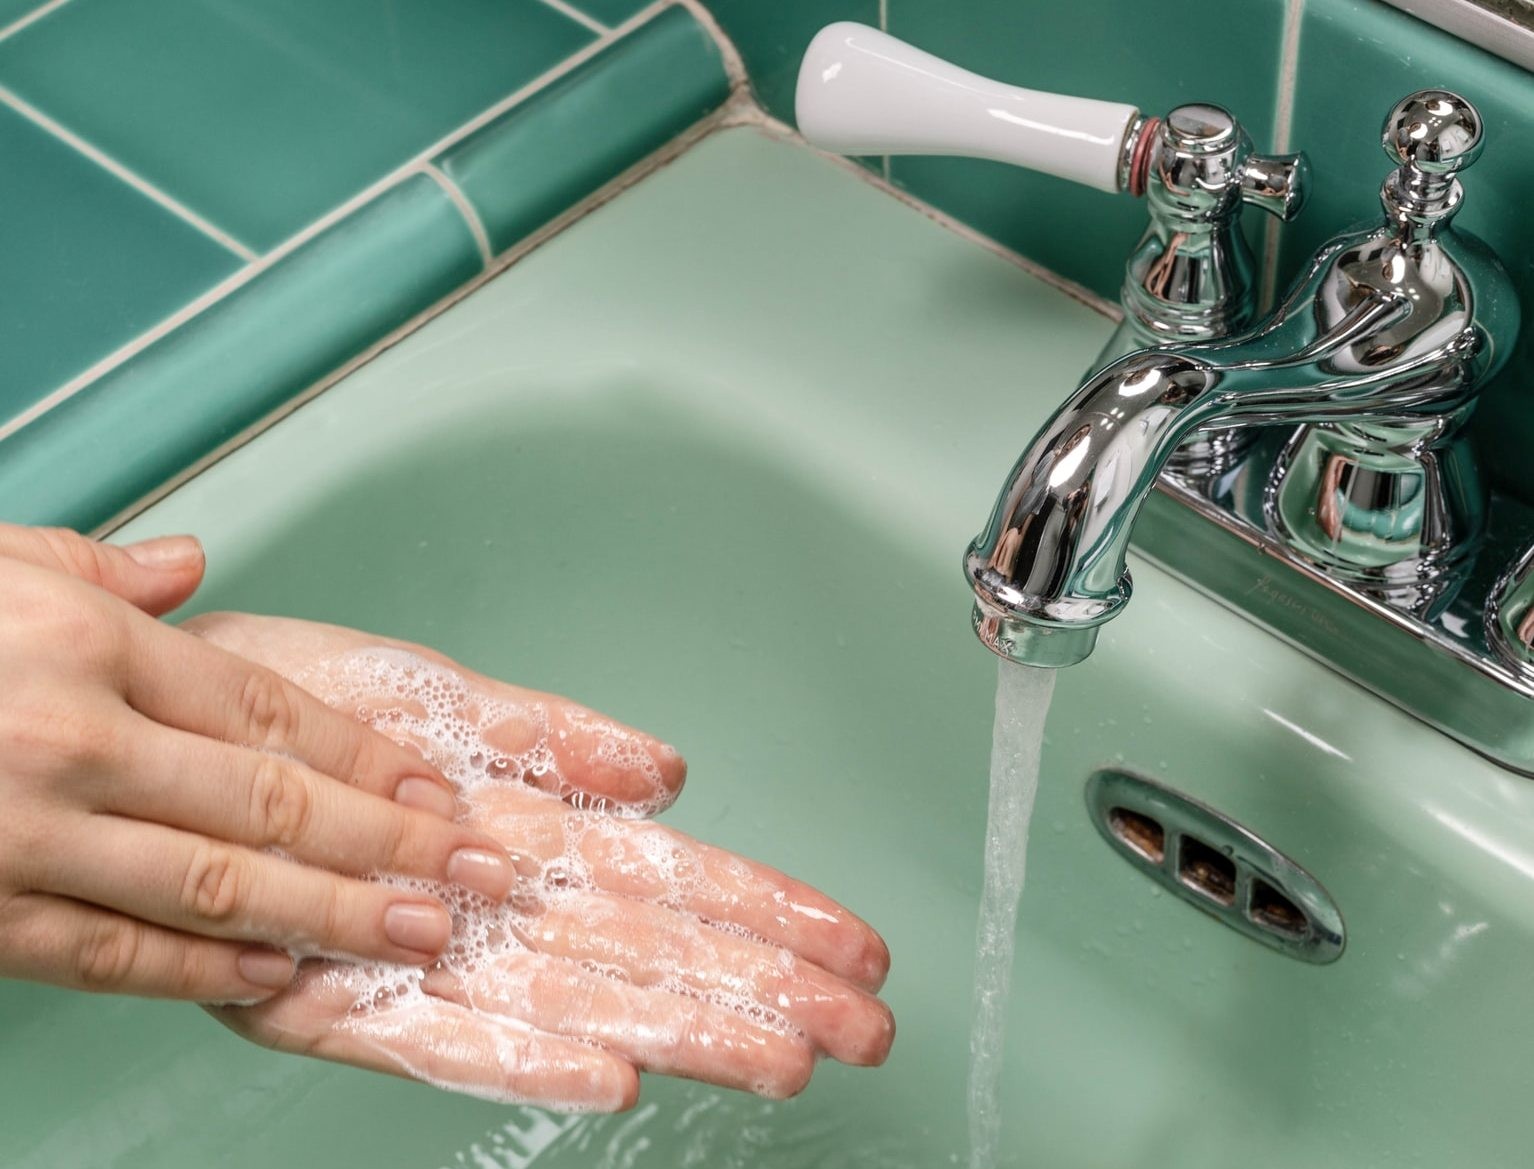 Modelo lavando as mãos (Foto: Unsplash)